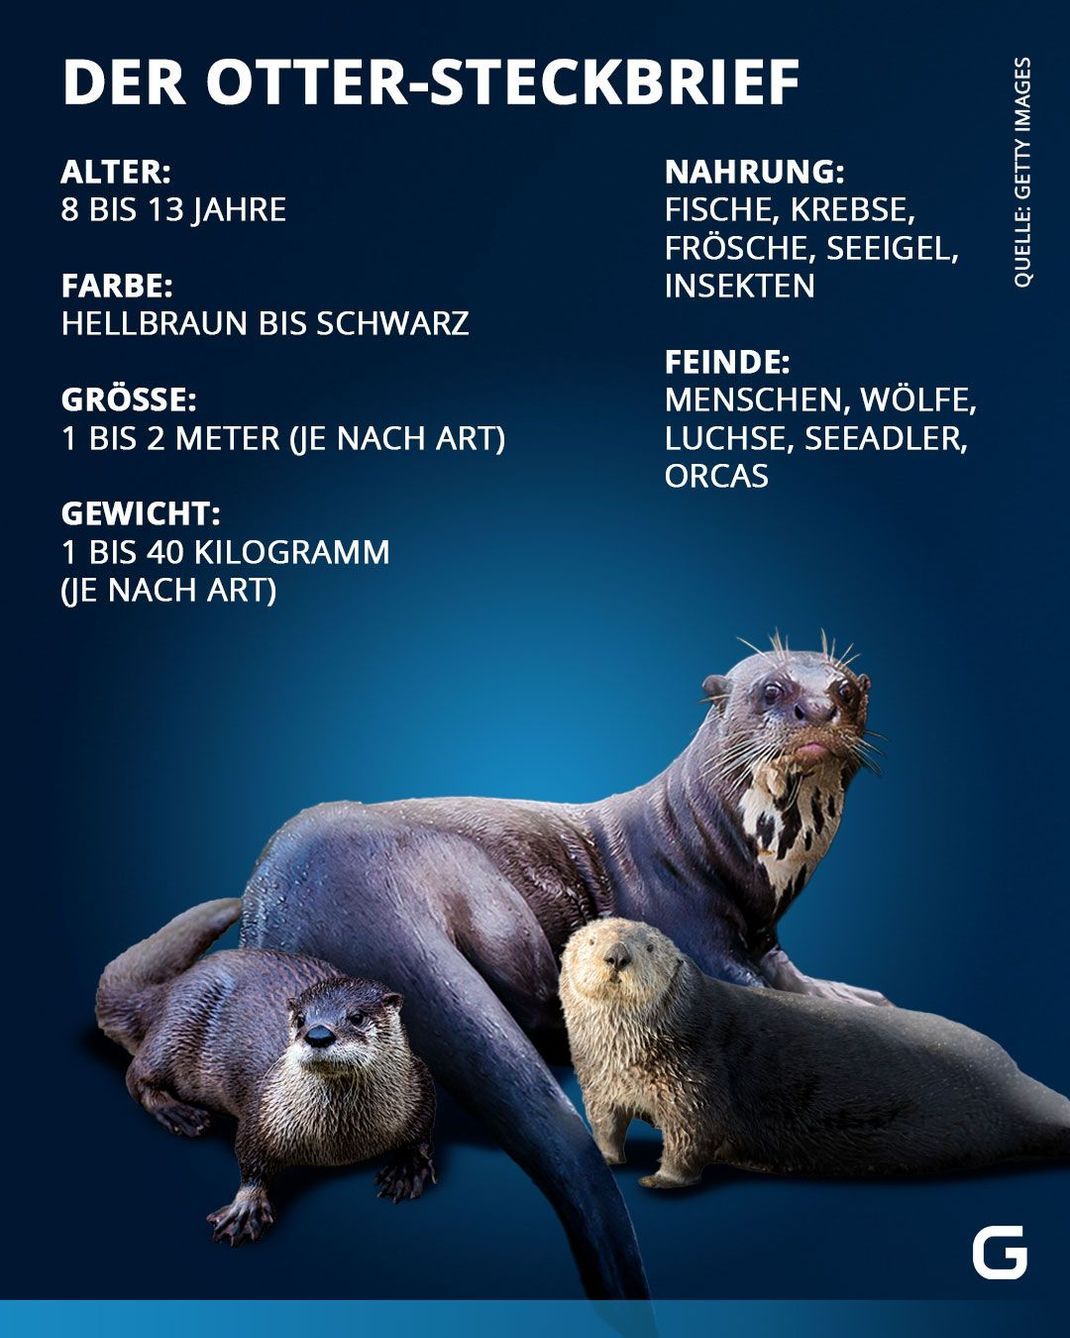 Steckbrief Otter: Alter, Farbe, Größe, Gewicht, Nahrung und Feinde des Otters. 